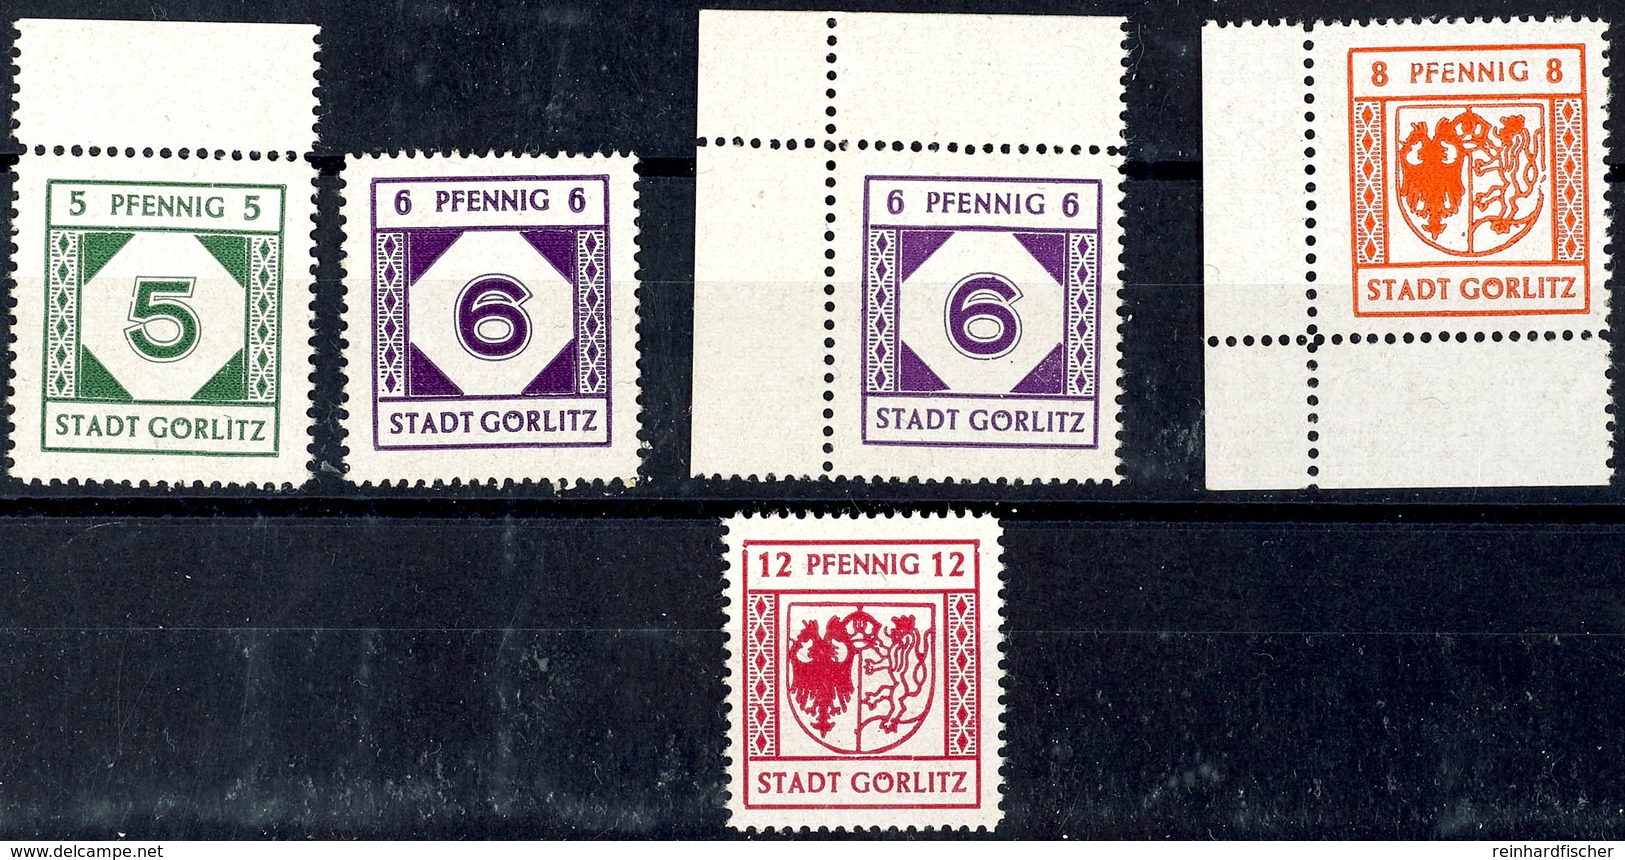 5 Pfg Bis 12 Pfg Freimarken, 6 Pfg In Beiden Farben, Tadellos Postfrisch, Mi. 510.-, Katalog: 9/12y ** - Goerlitz